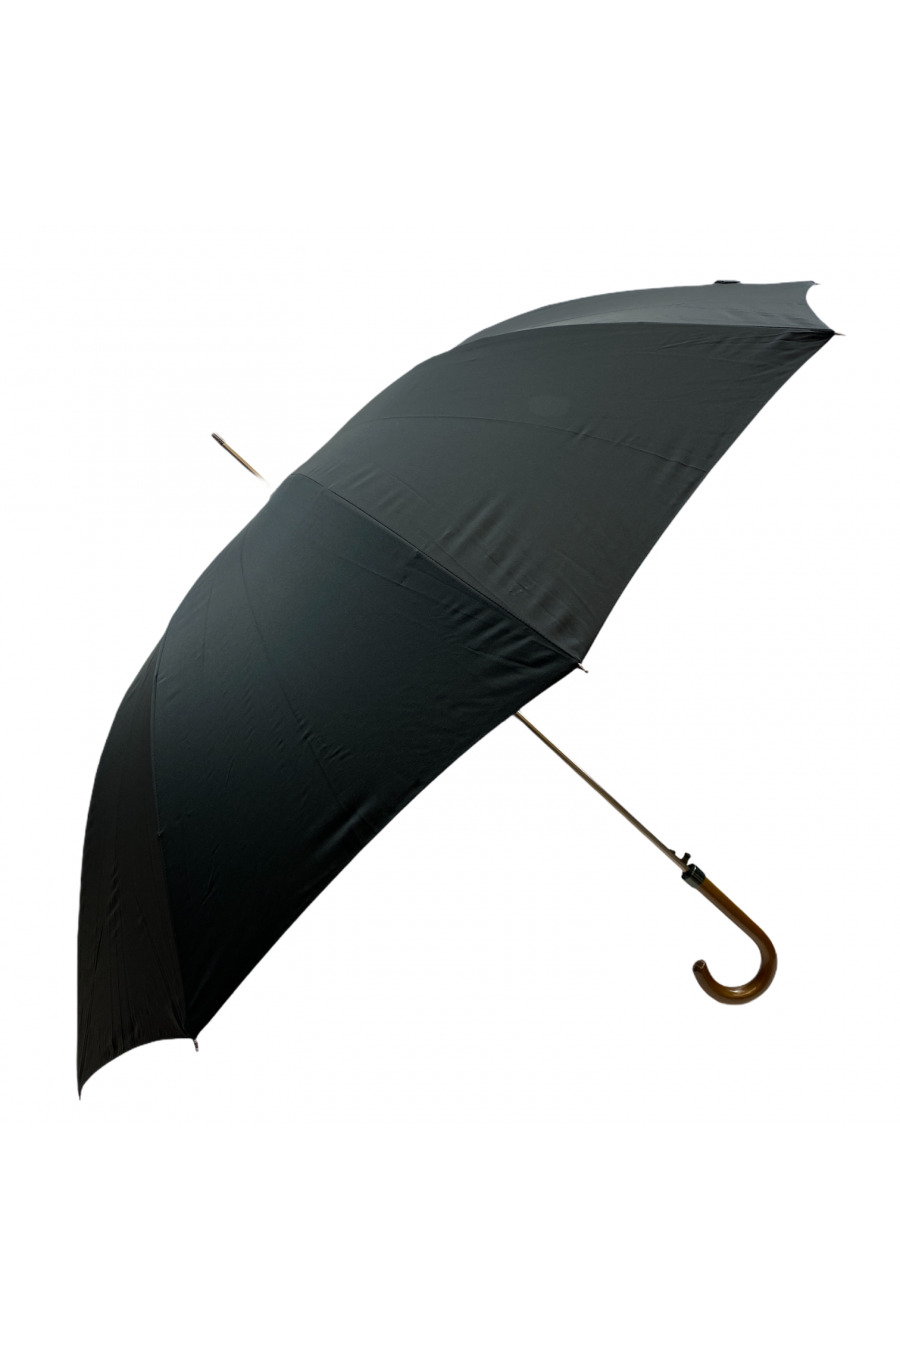 Grand parapluie - Deauville - Kaki bande Noire